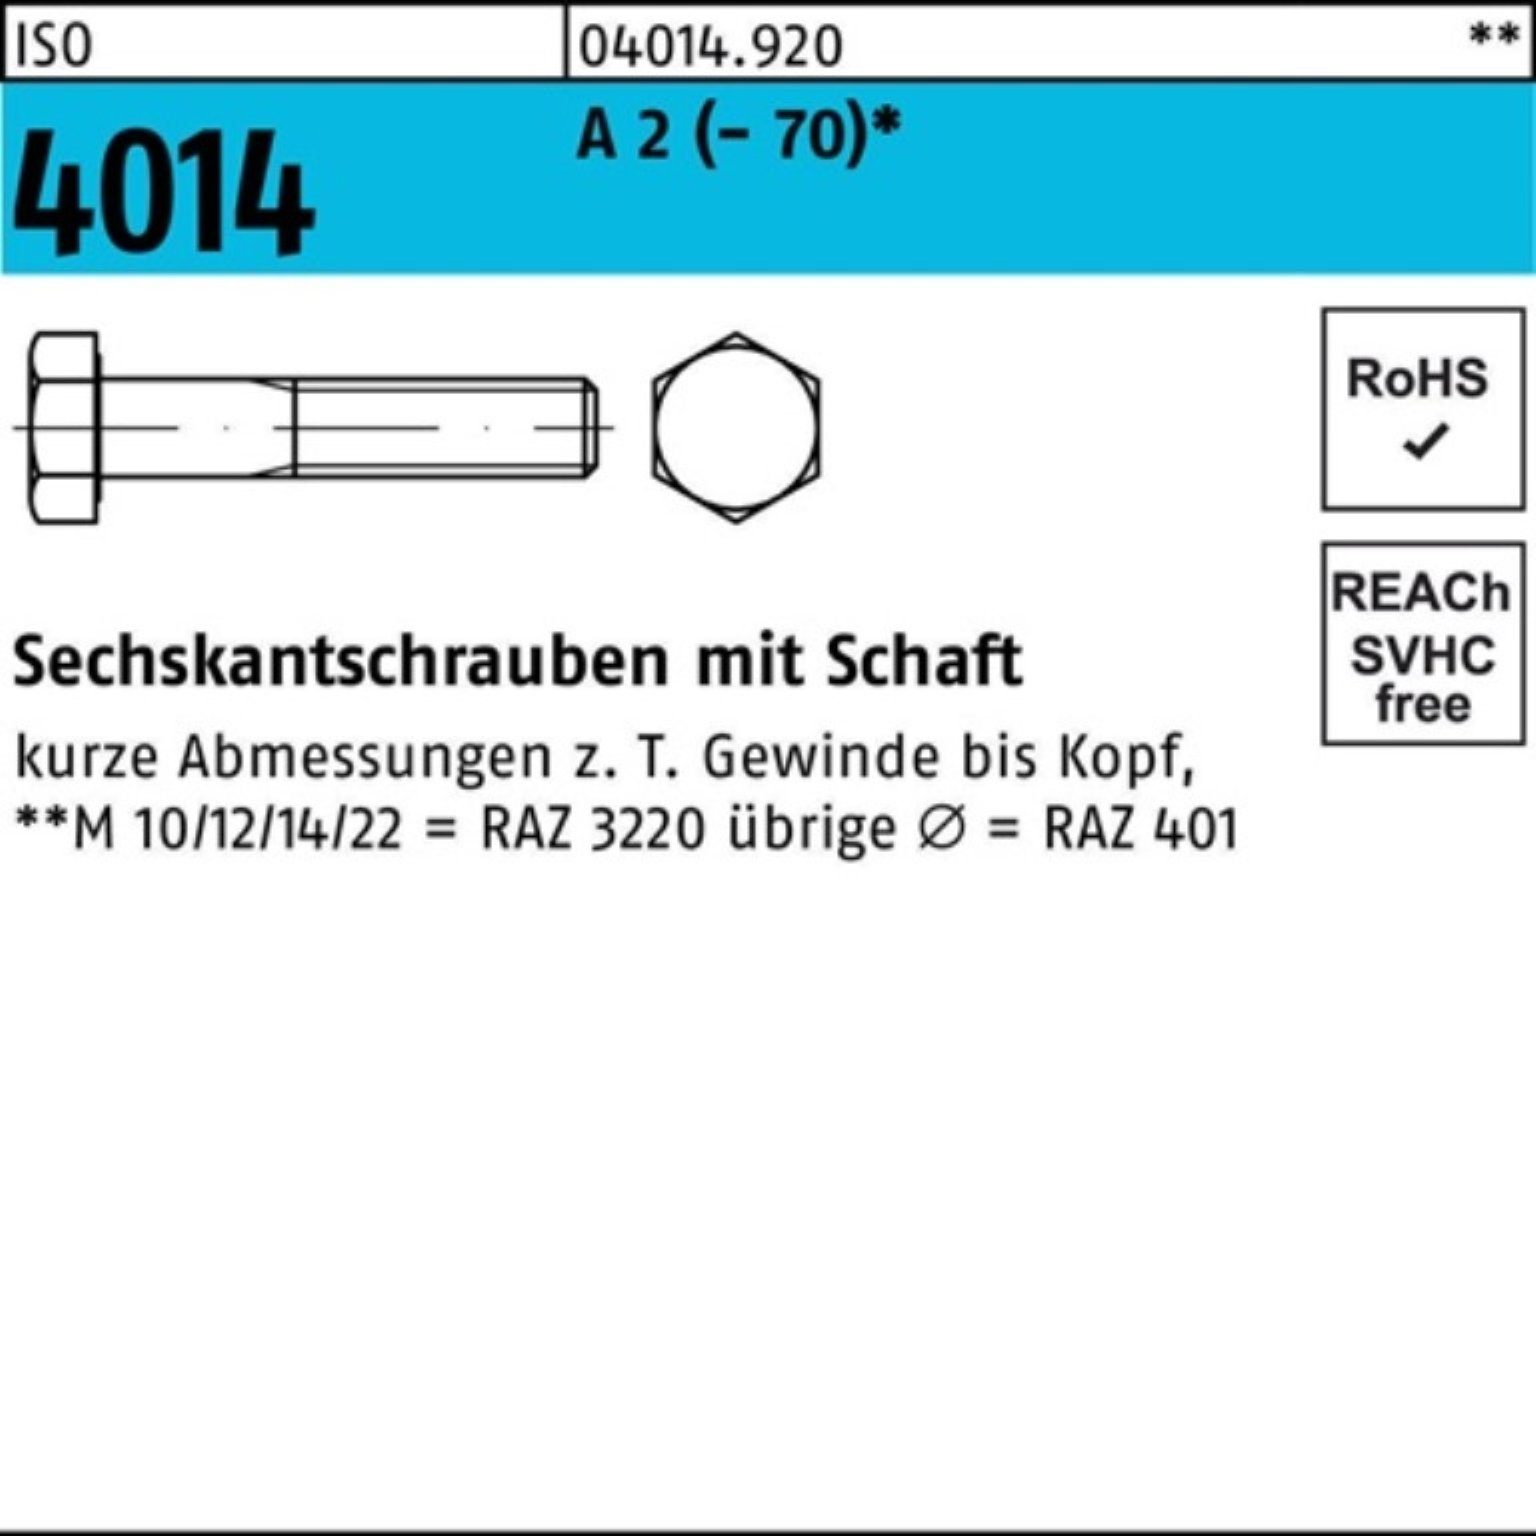 Bufab Sechskantschraube 100er Pack Sechskantschraube ISO 4014 Schaft M12x 55 A 2 (70) 50 St